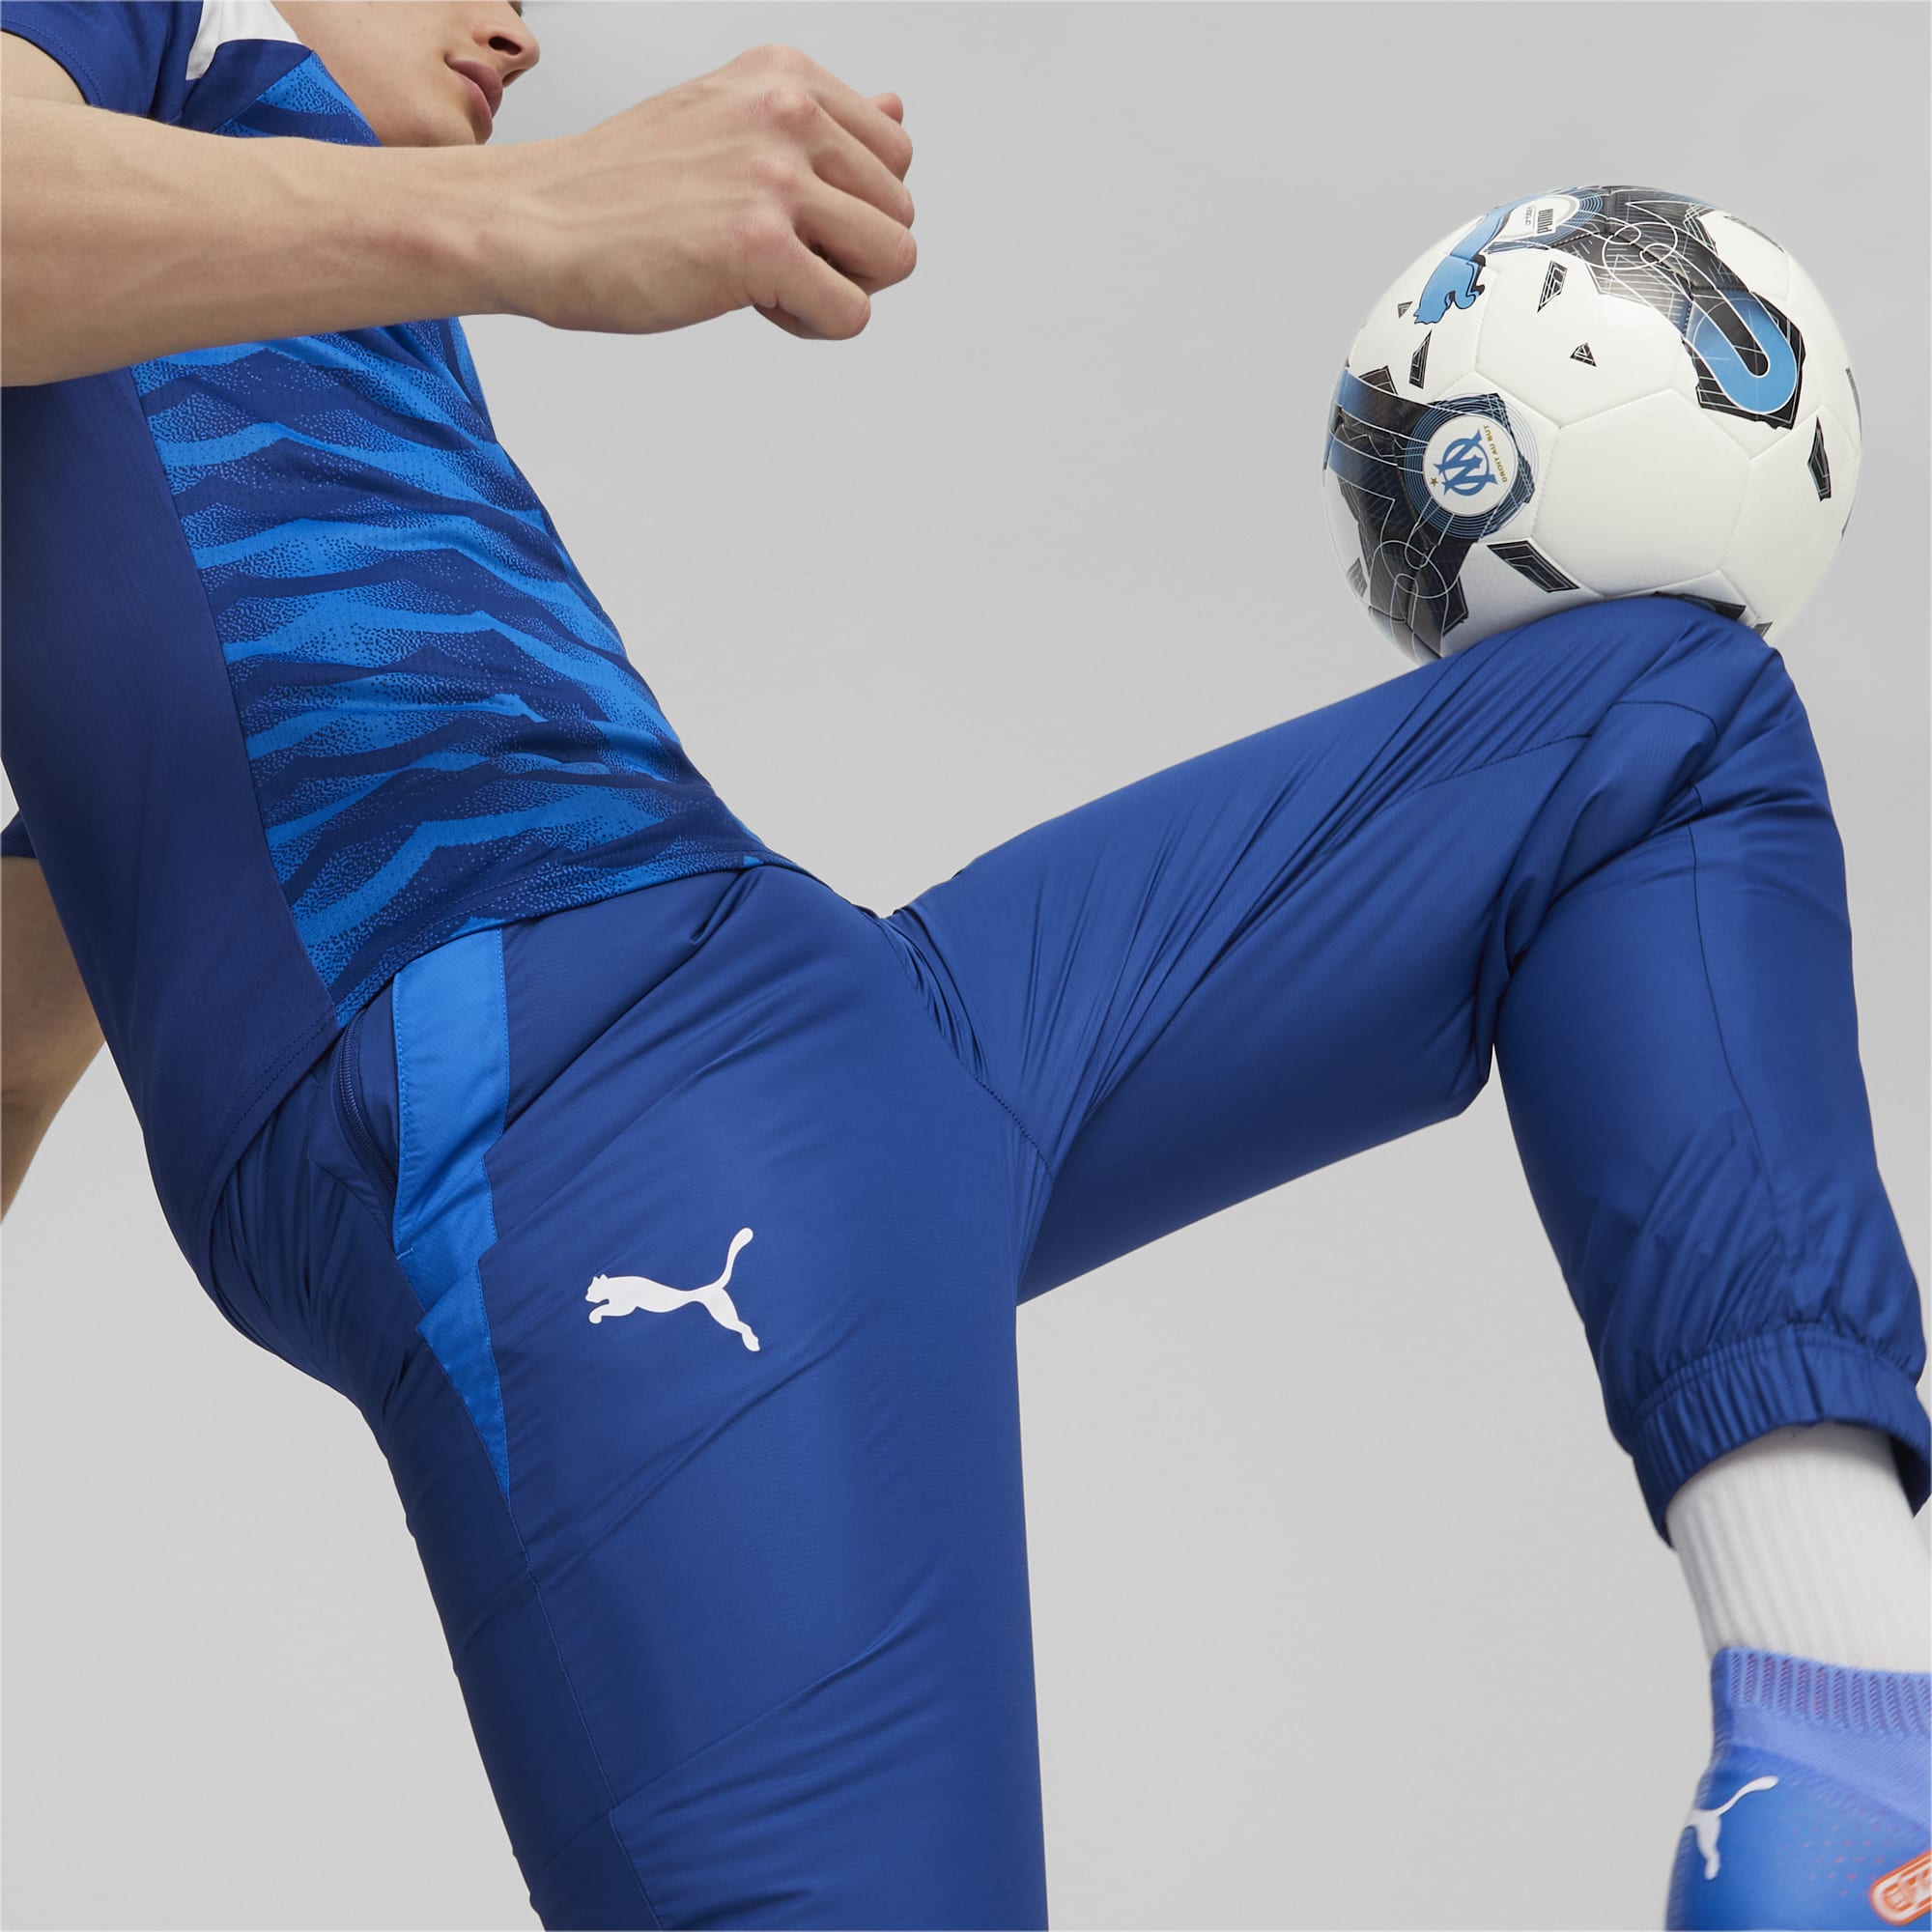 Men's PUMA Olympique De Marseille Prematch Football Pants, Royal Blue, Size M, Clothing